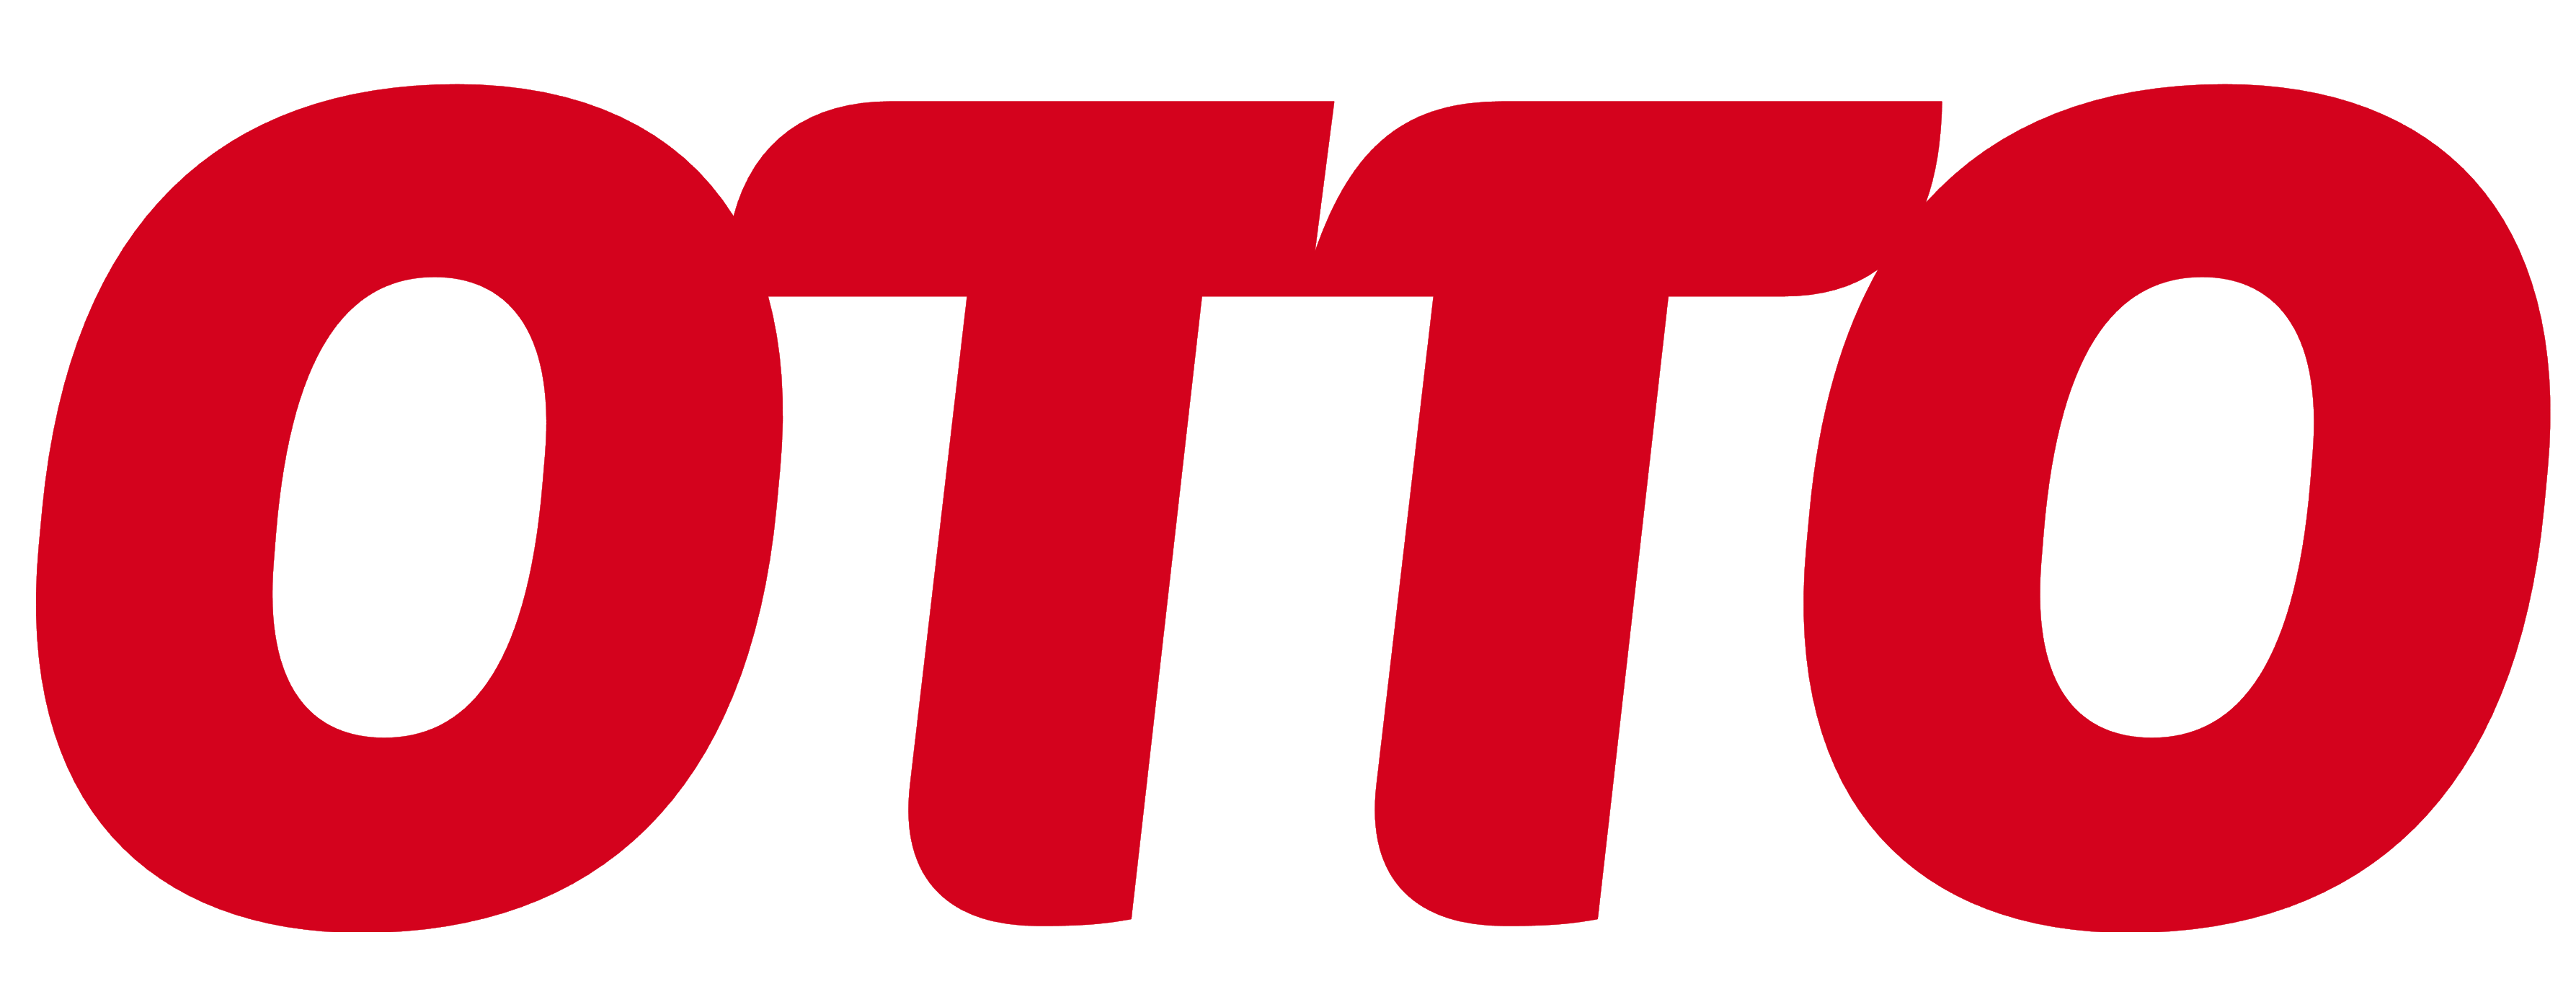 OTTO logo, logotype